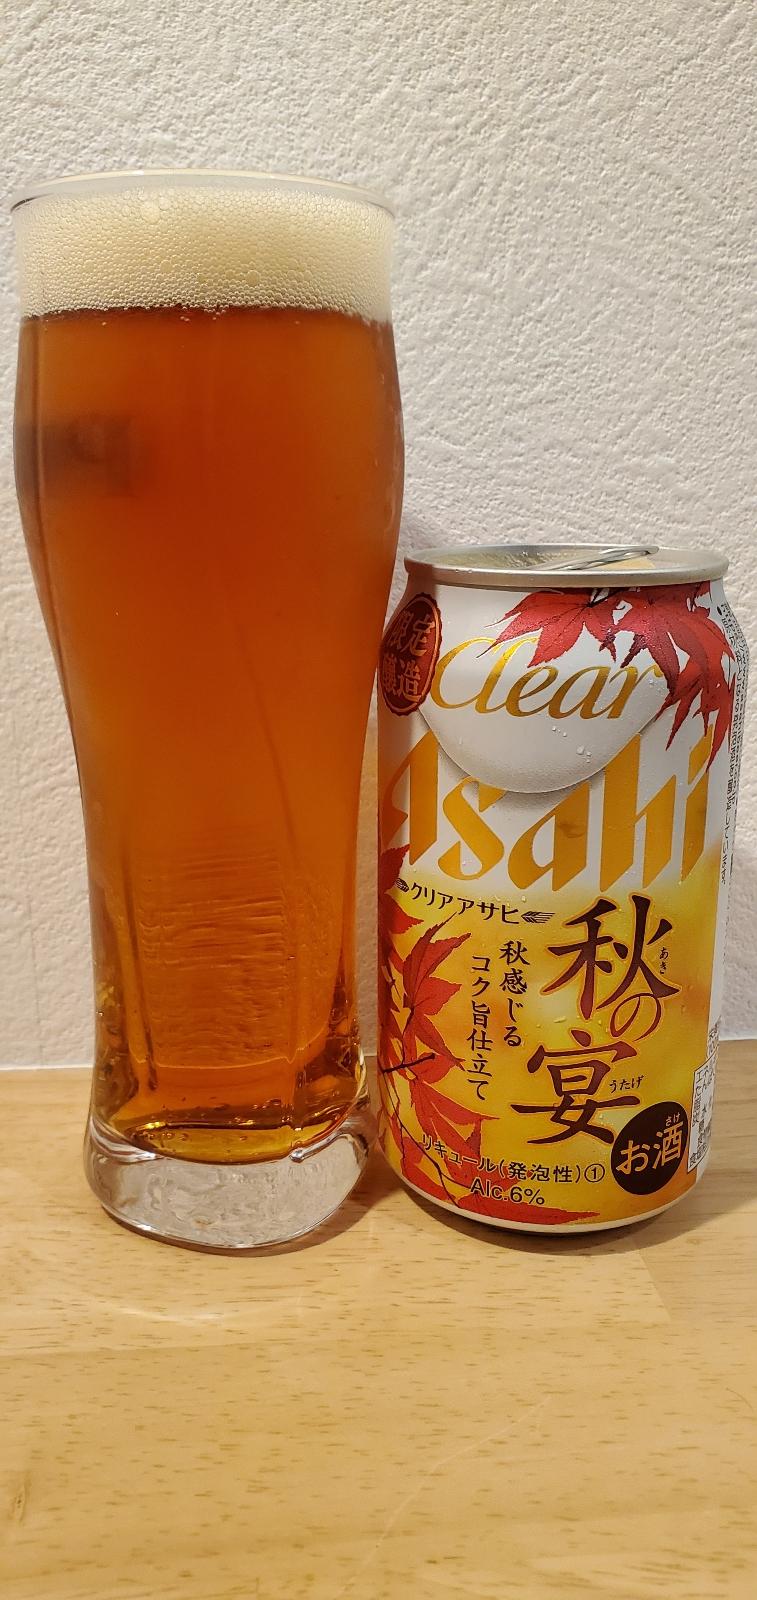 Asahi Clear Aki no Utage (2020)